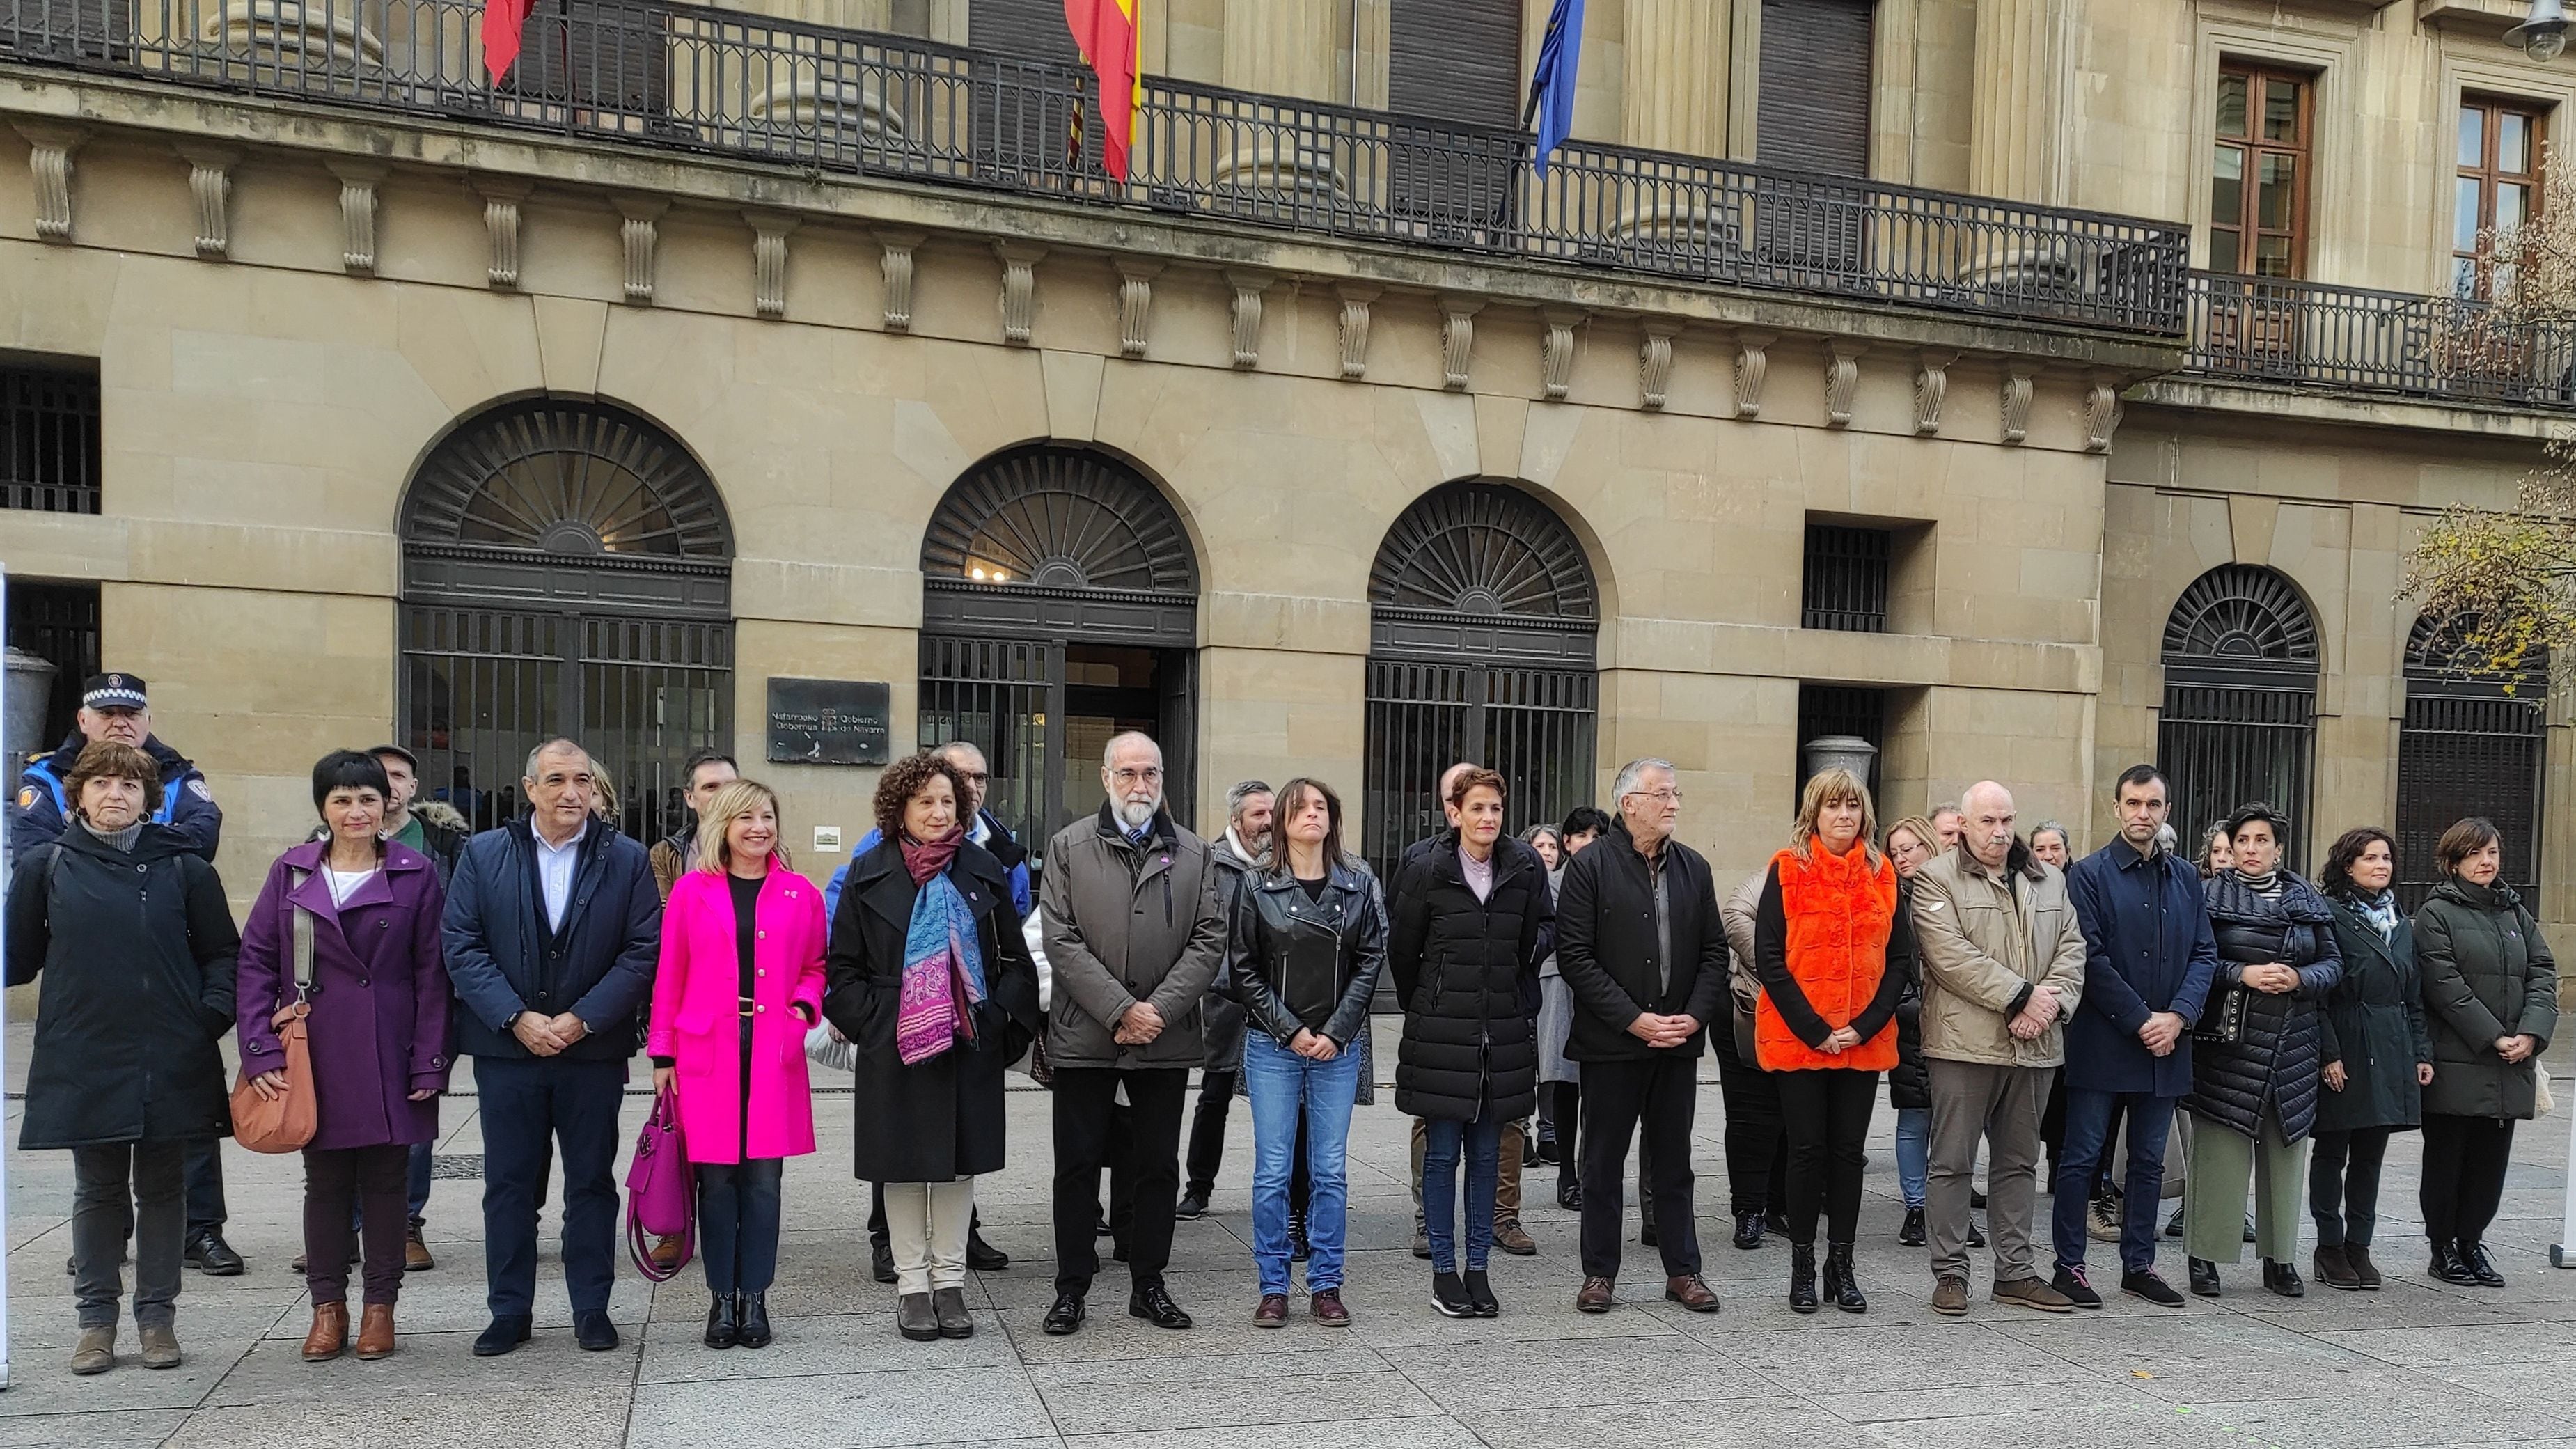 Representantes del Gobierno de Navarra, con la presidenta María Chivite a la cabeza, y parlamentarios forales participan en una concentración en Pamplona contra la violencia machismo.